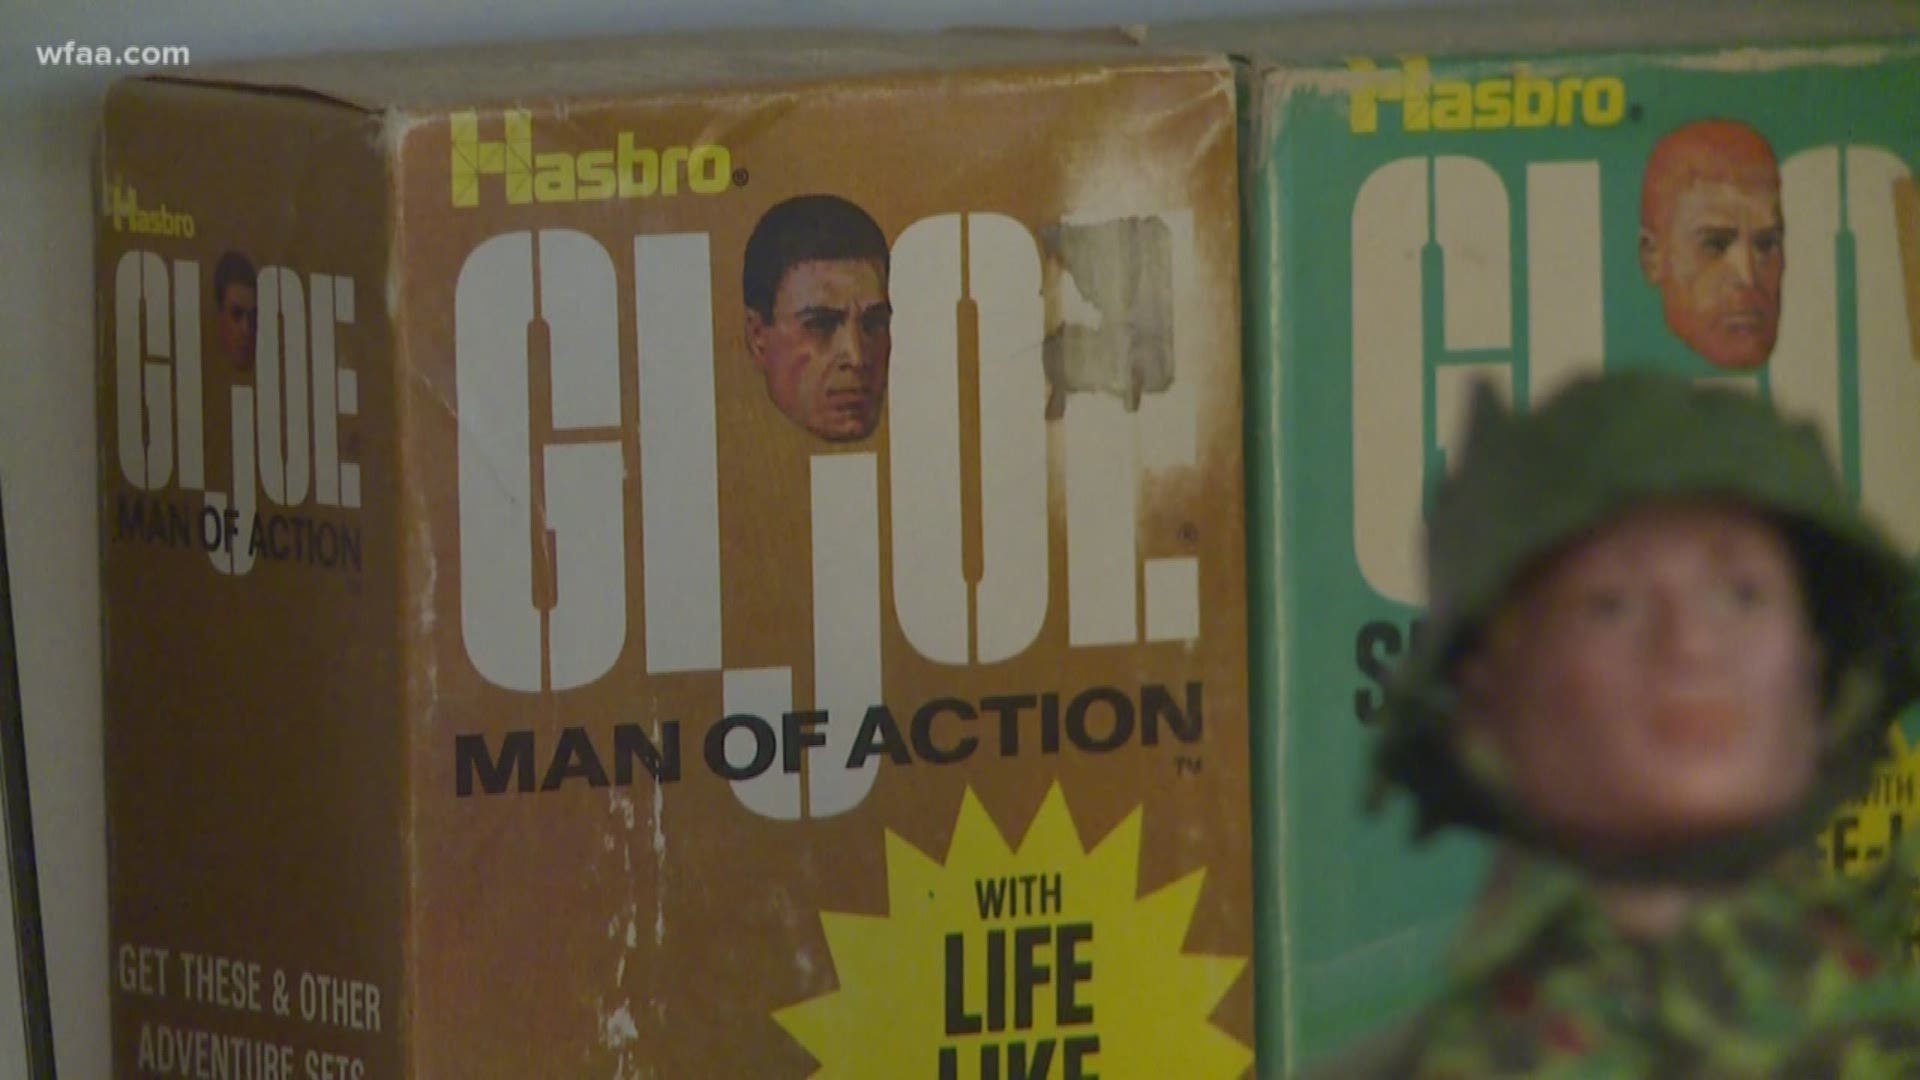 G.I. Joe helps man keep childhood alive